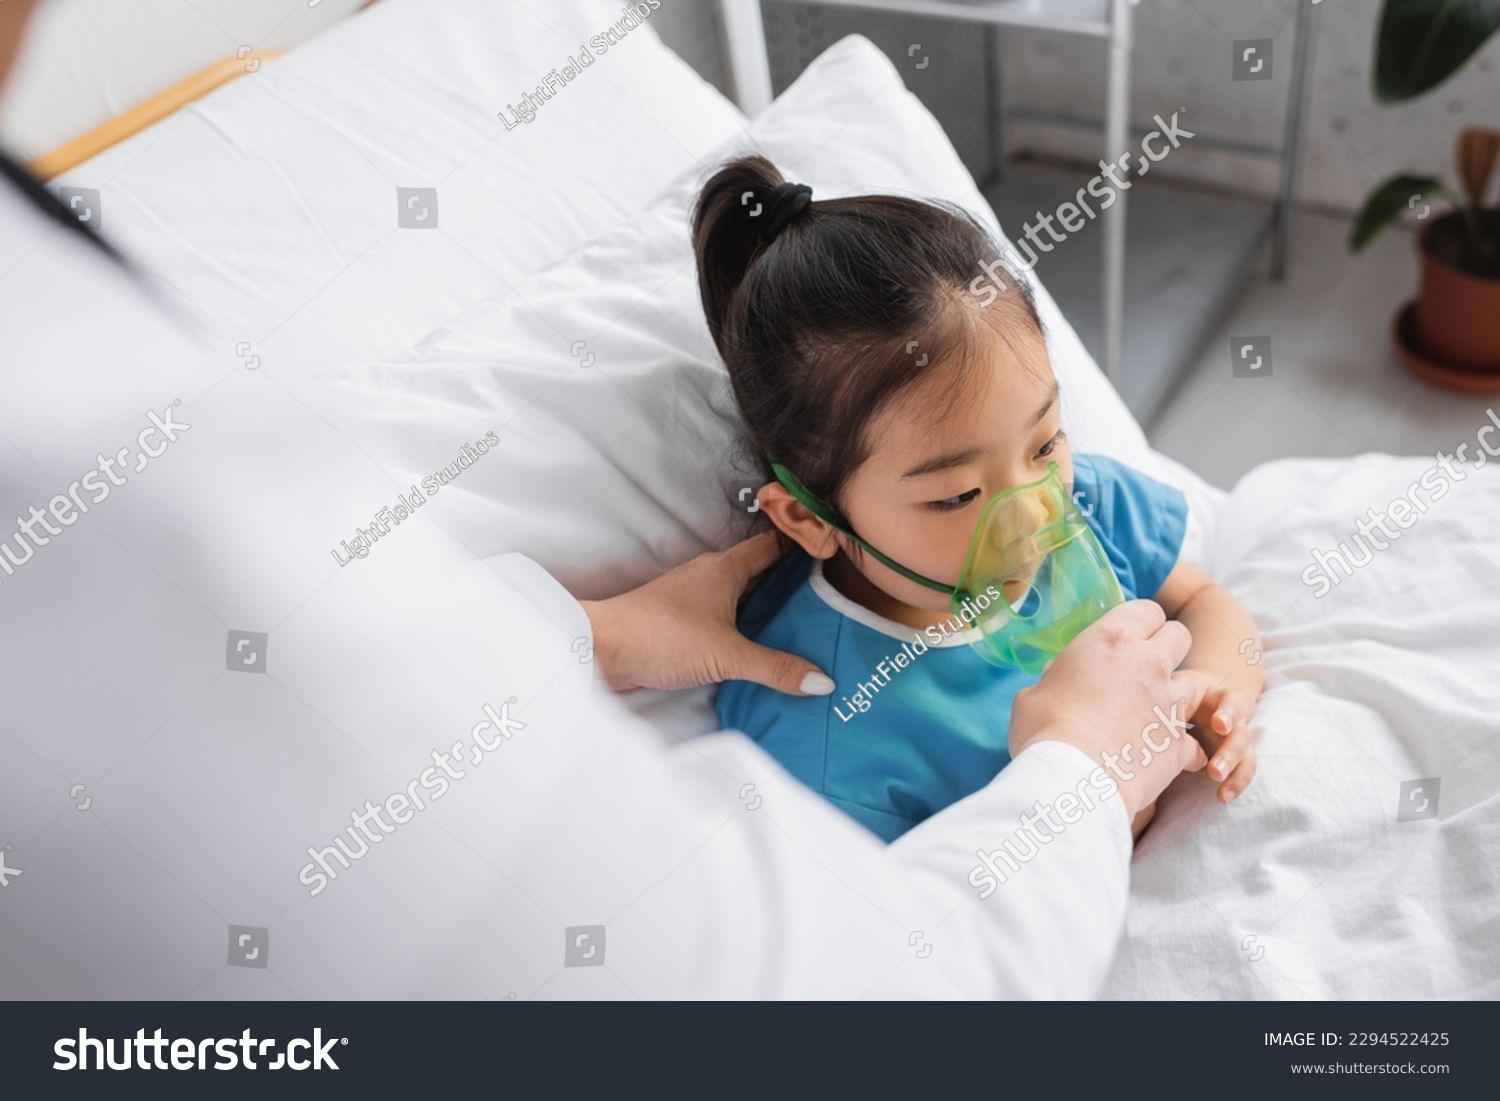 blurred doctor adjusting oxygen mask on sick asian child on hospital bed #2294522425